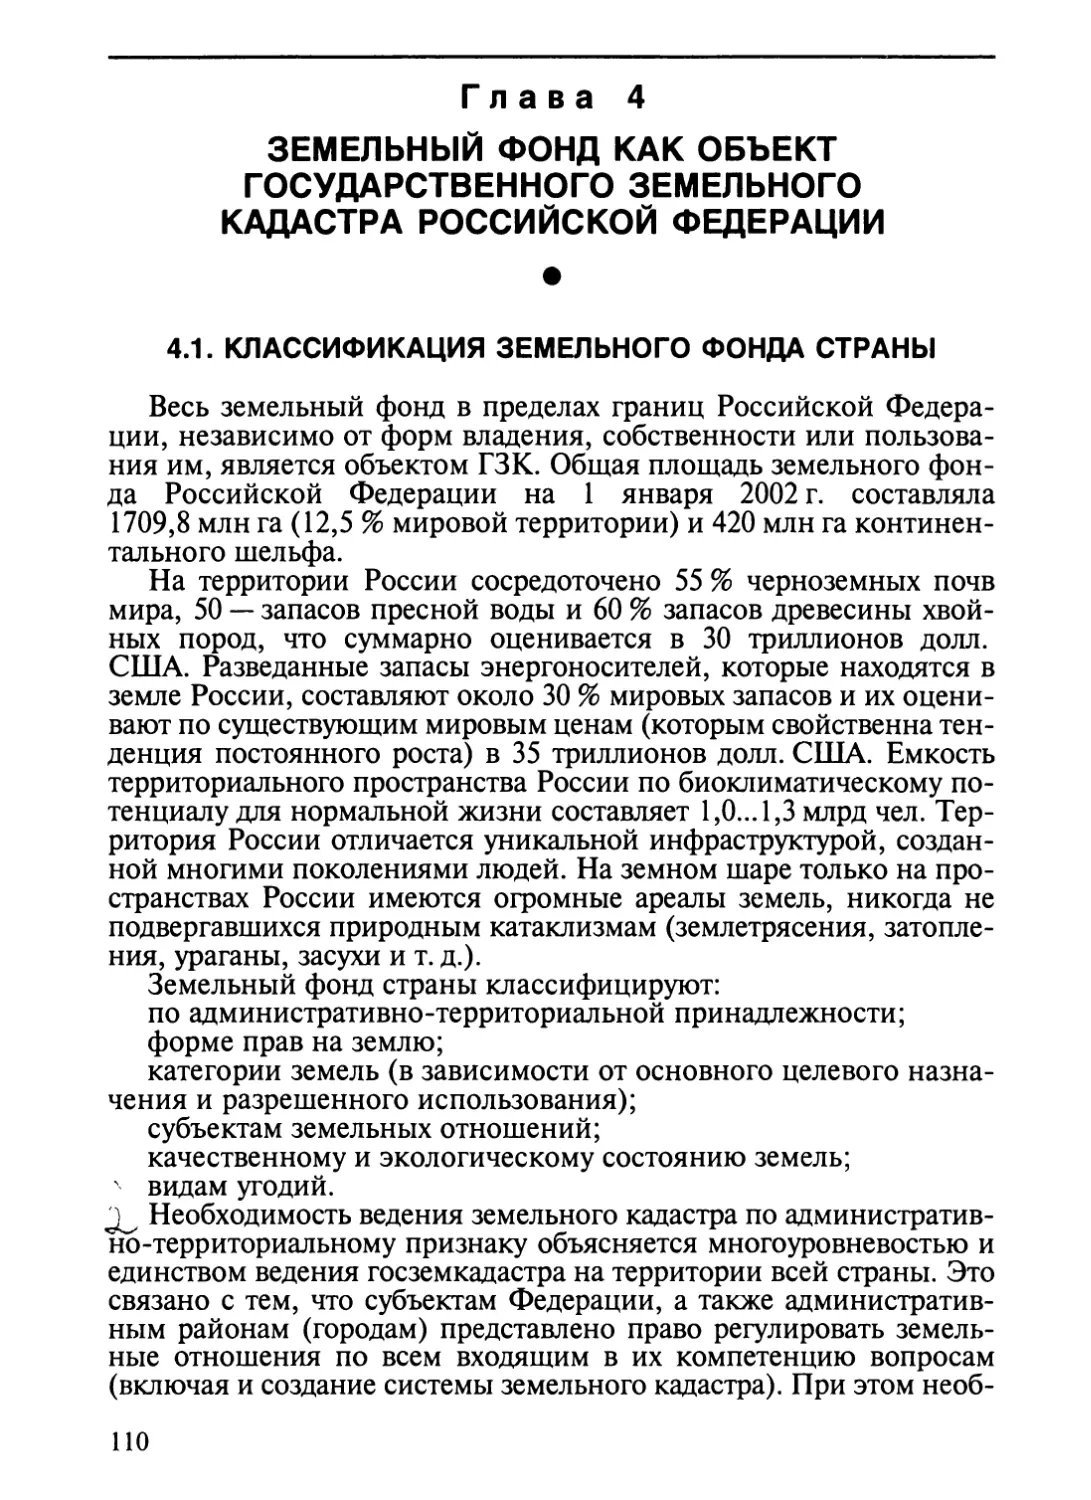 Глава 4. Земельный фонд страны как объект государственного земельного ка-дастра Российской Федерации